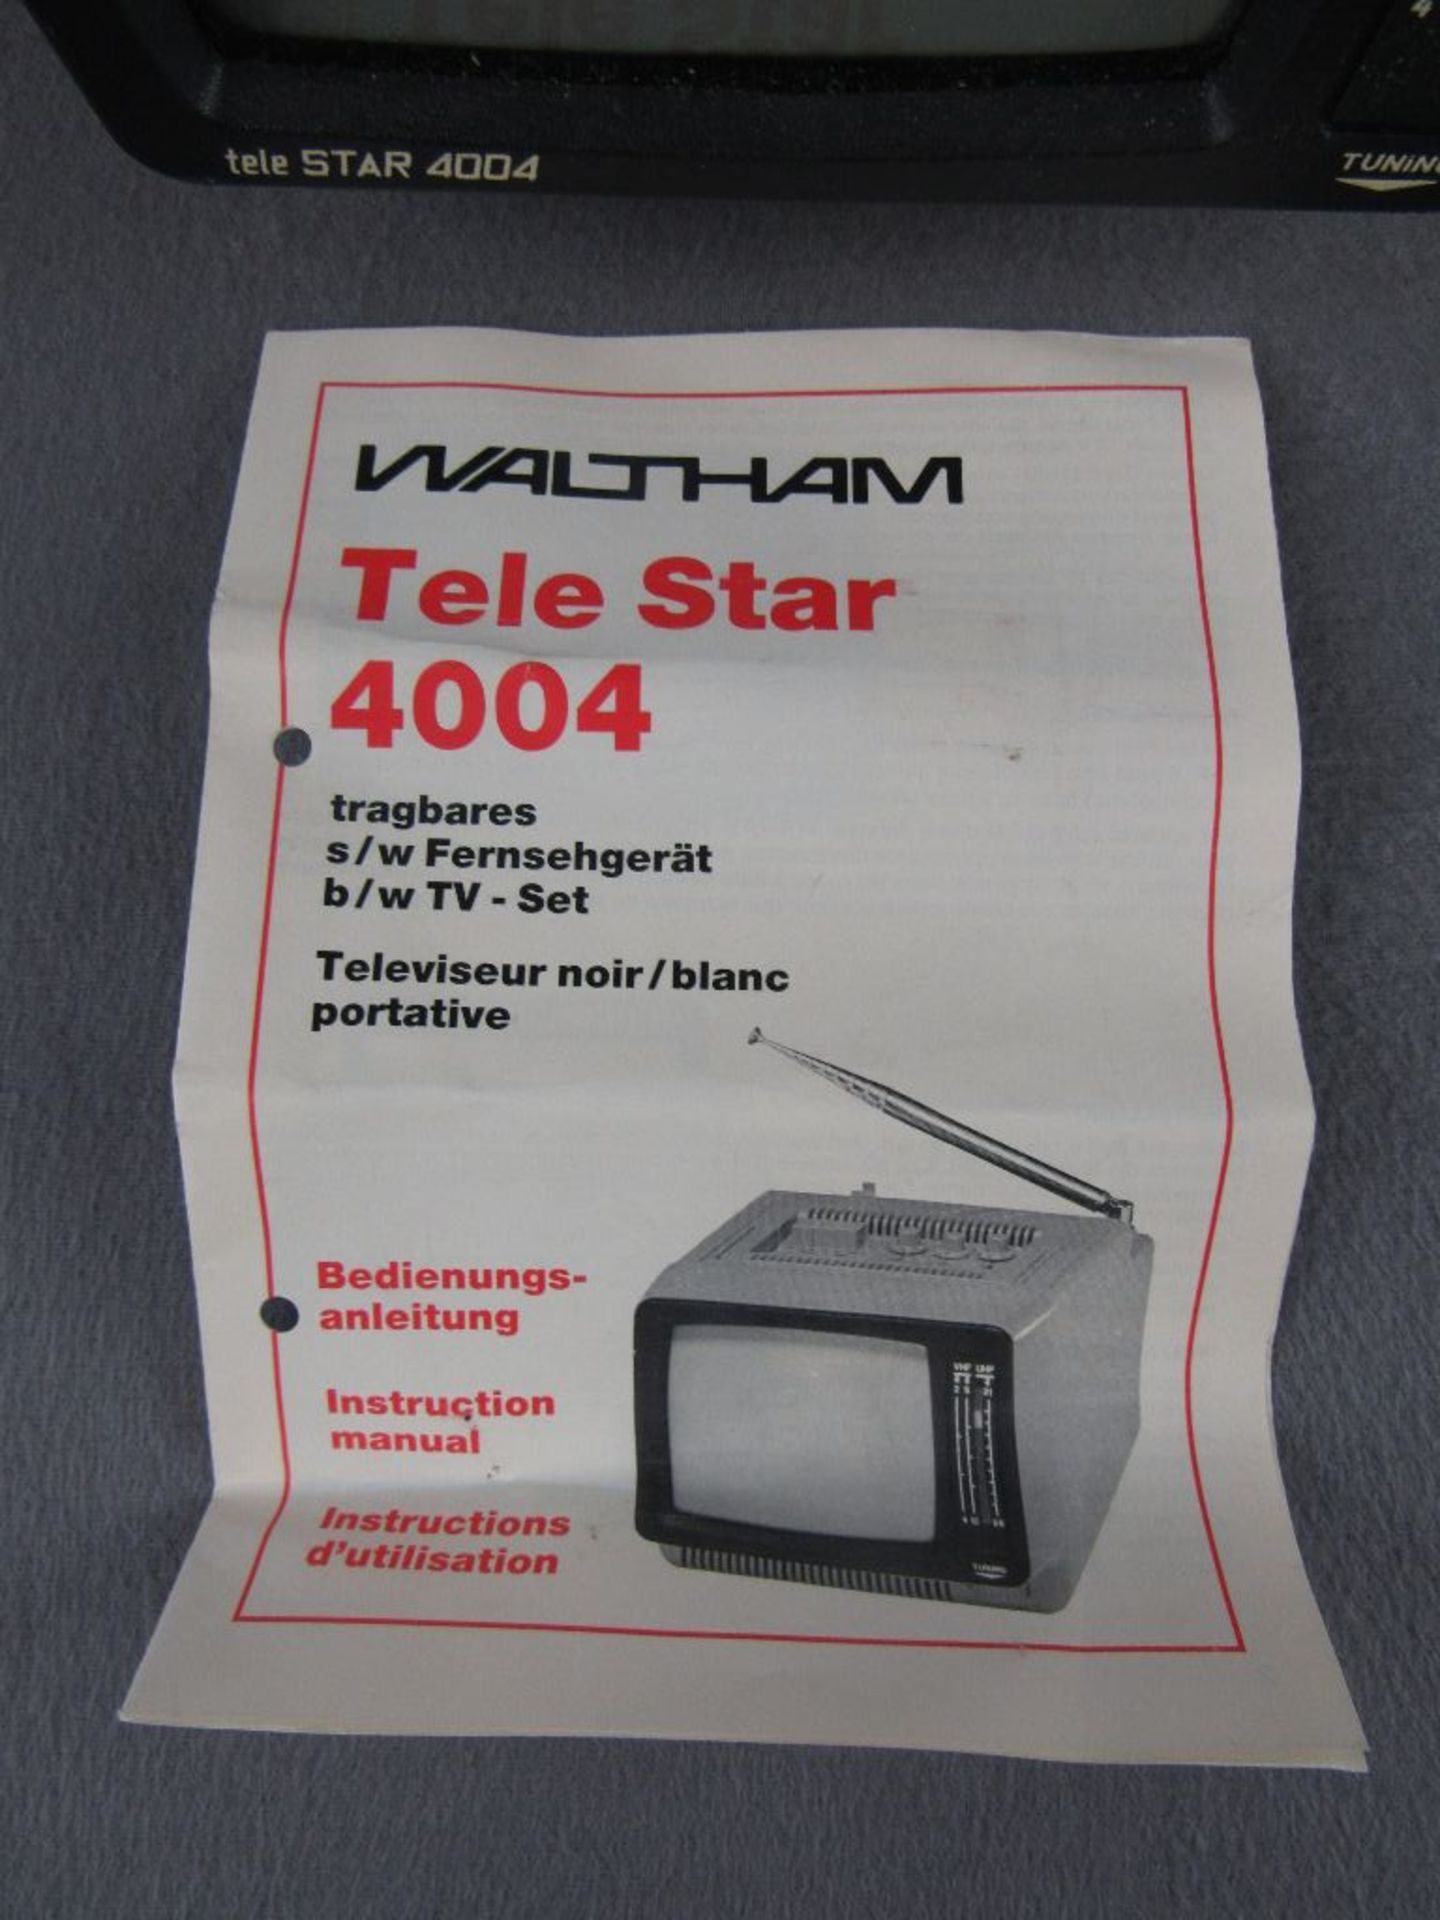 Vintage tragbarer Fernseher 70er Jahre Telestar 4004 mit original Anleitung - Bild 4 aus 5